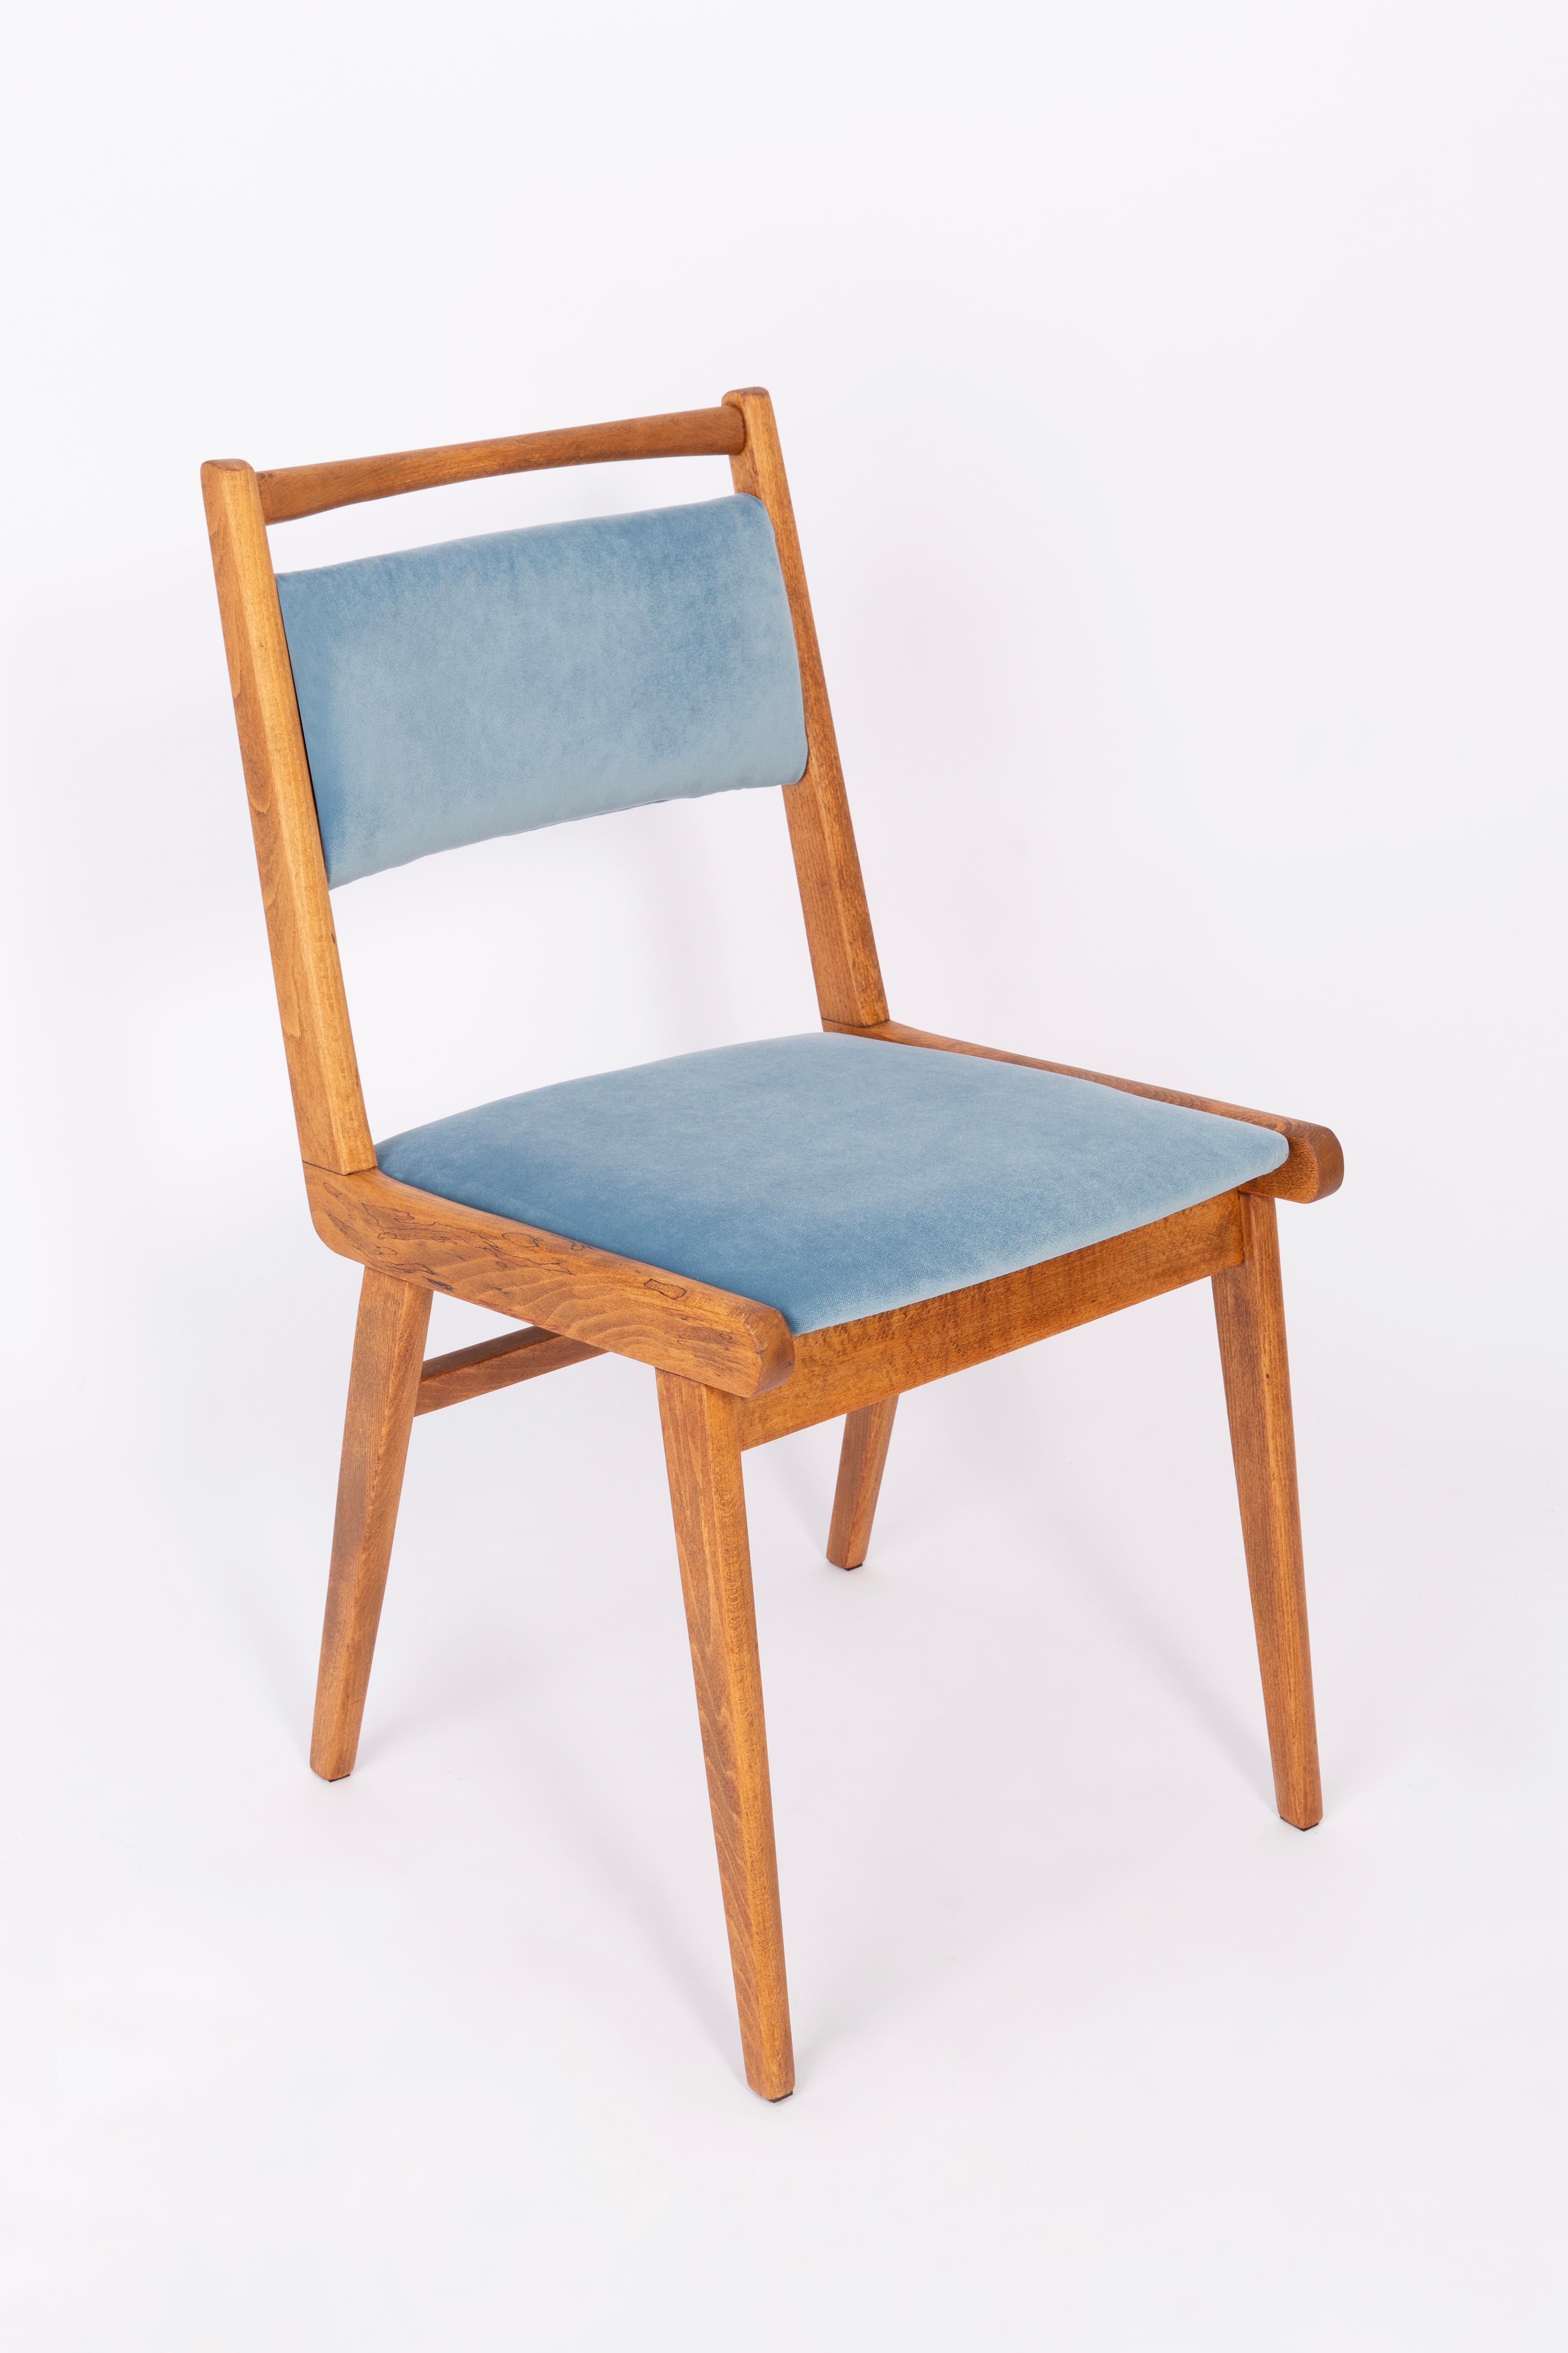 Chaises conçues par le professeur Rajmund Halas. C'est un modèle de type jar. Fabriqué en bois de hêtre. Les chaises ont été entièrement rénovées et les boiseries ont été rafraîchies. L'assise et le dossier sont habillés d'un tissu velours bleu